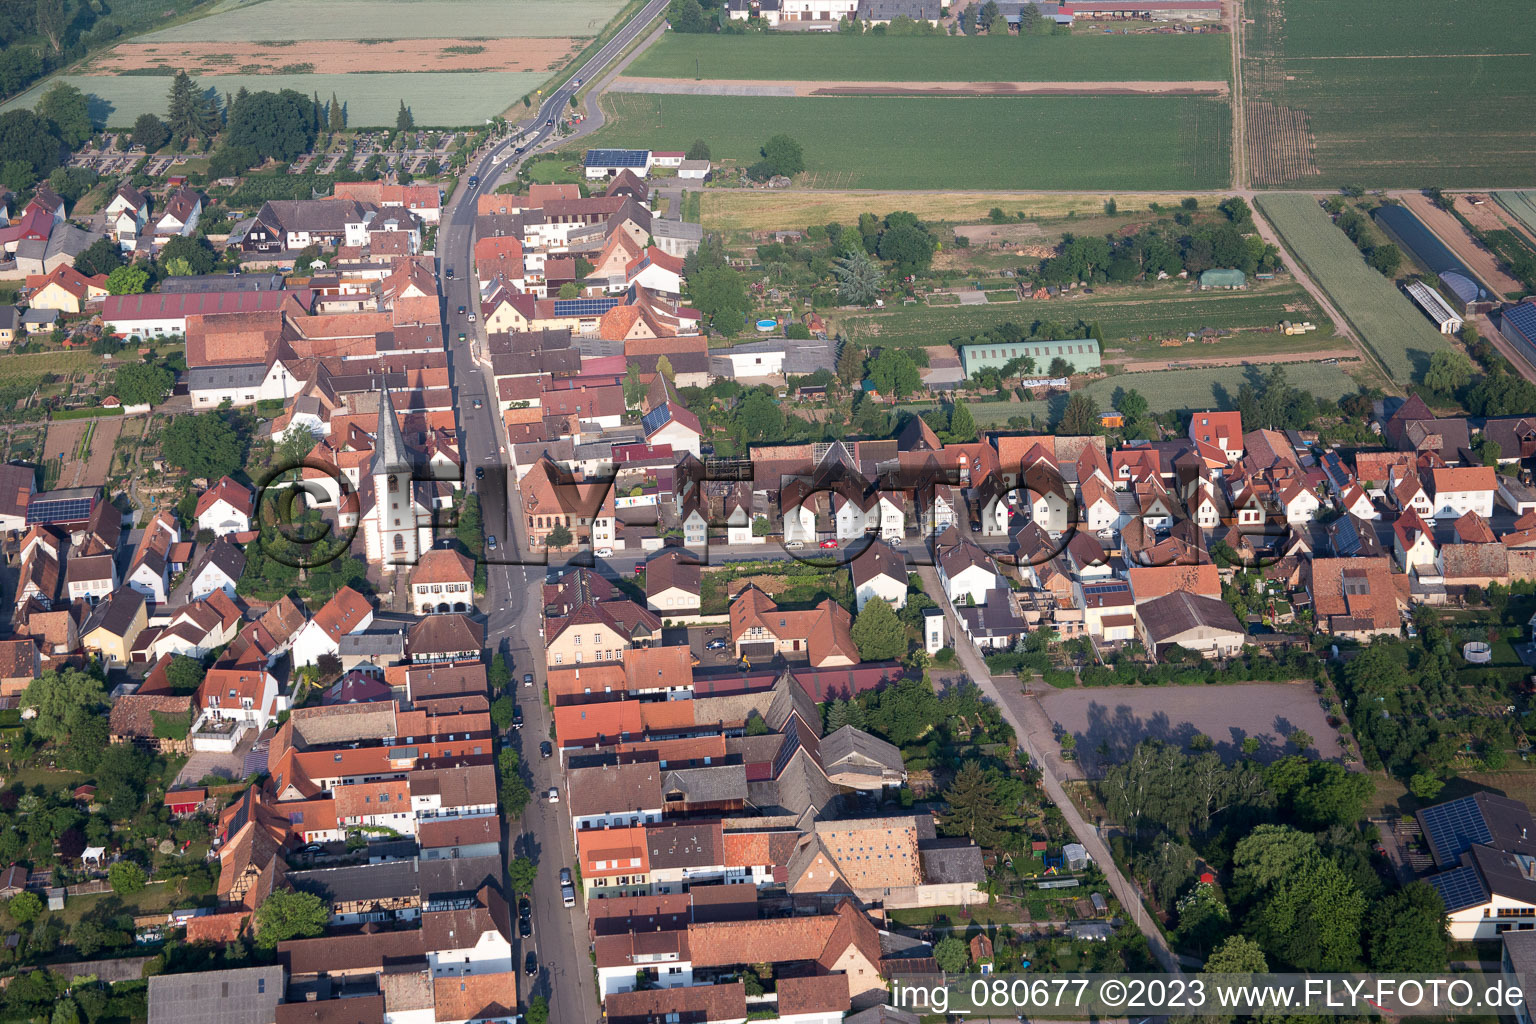 Ottersheim bei Landau dans le département Rhénanie-Palatinat, Allemagne vu d'un drone